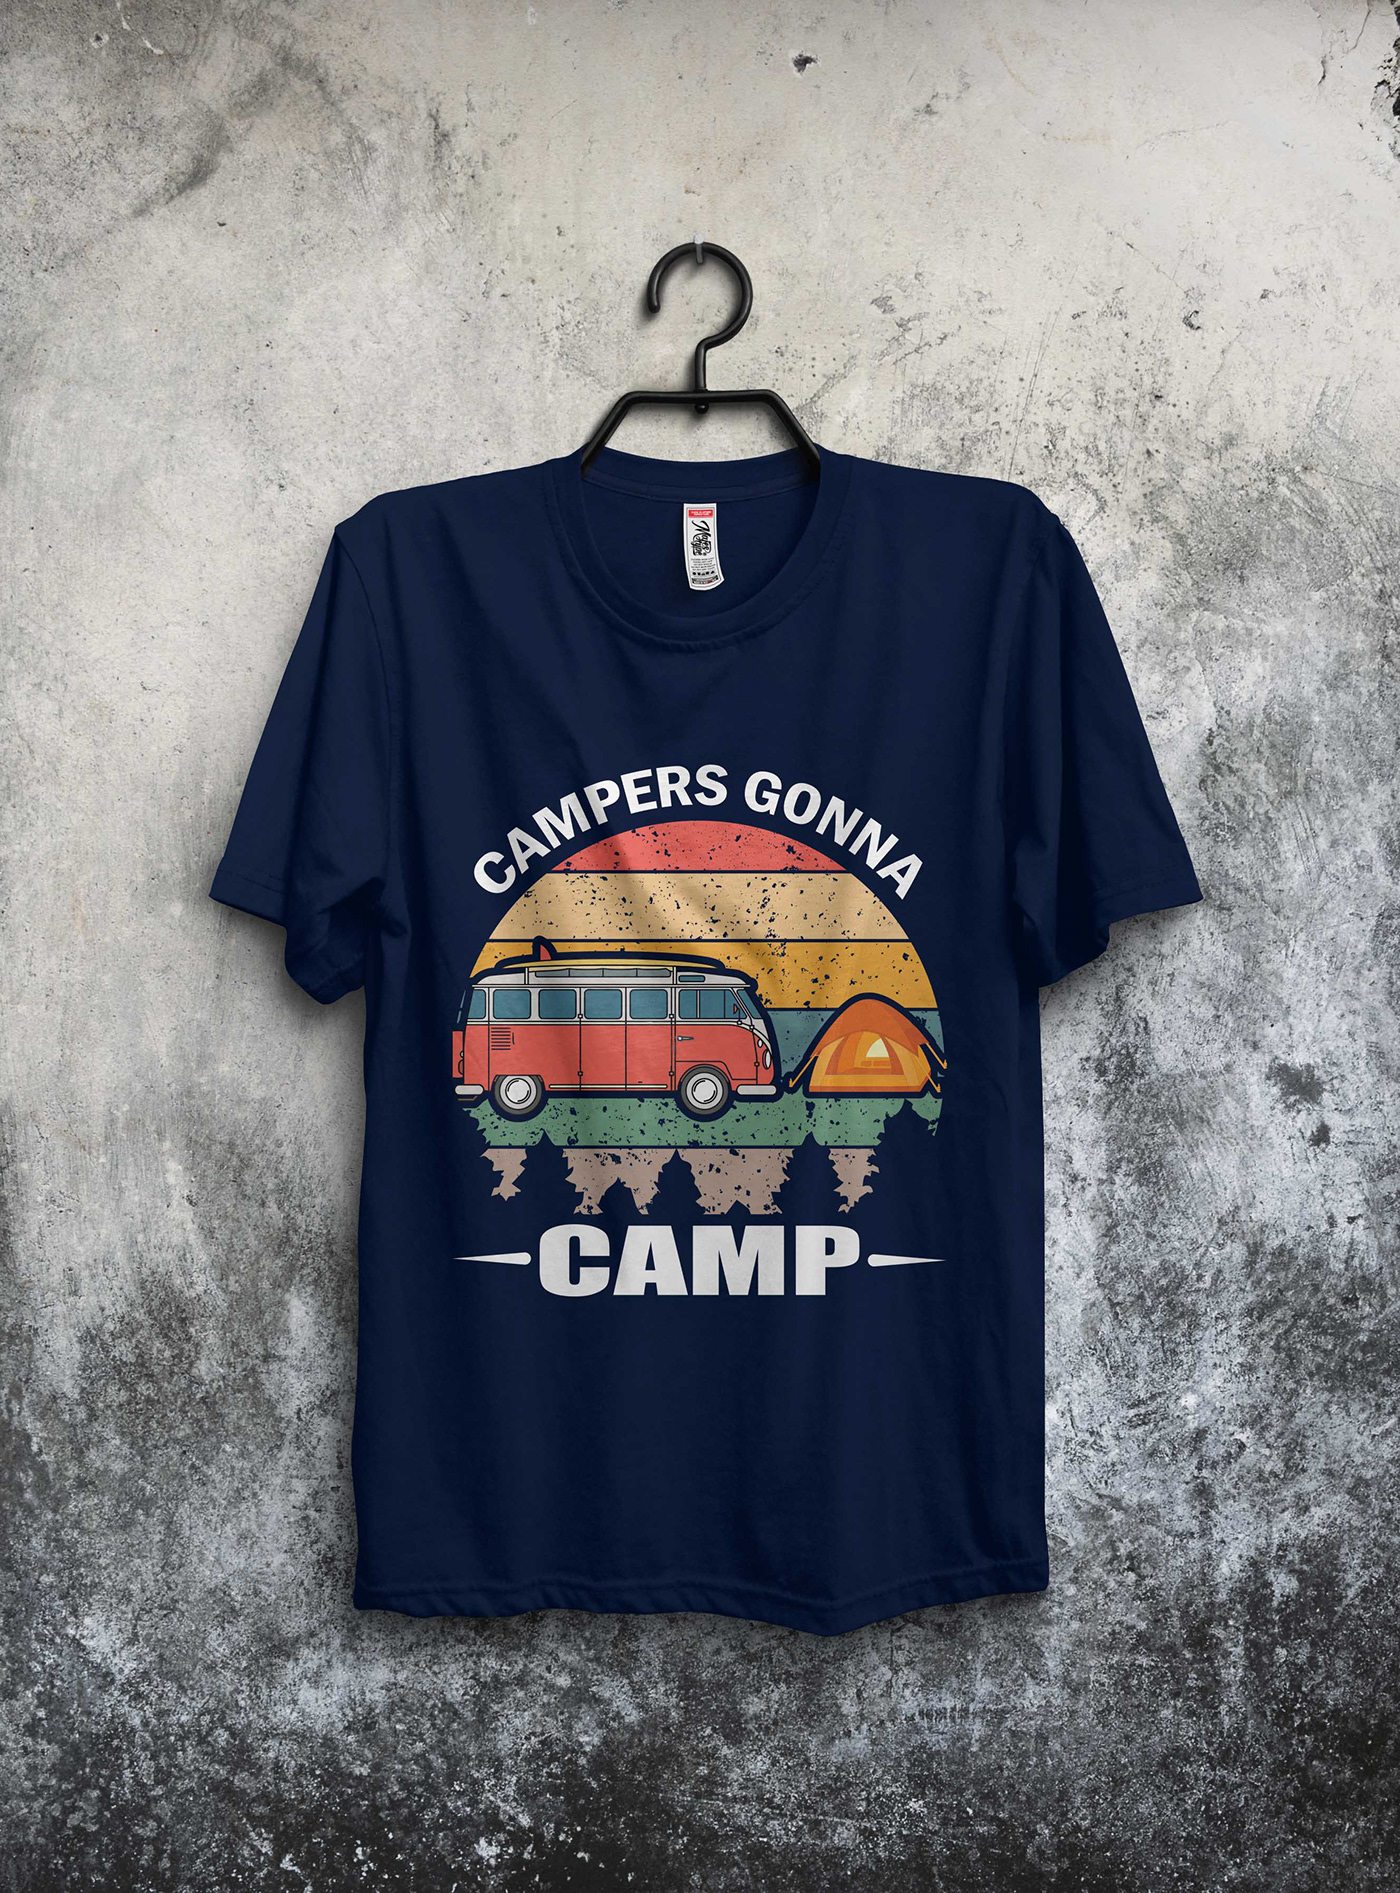 Camping T-Shirt Design Bundle Free on Behance